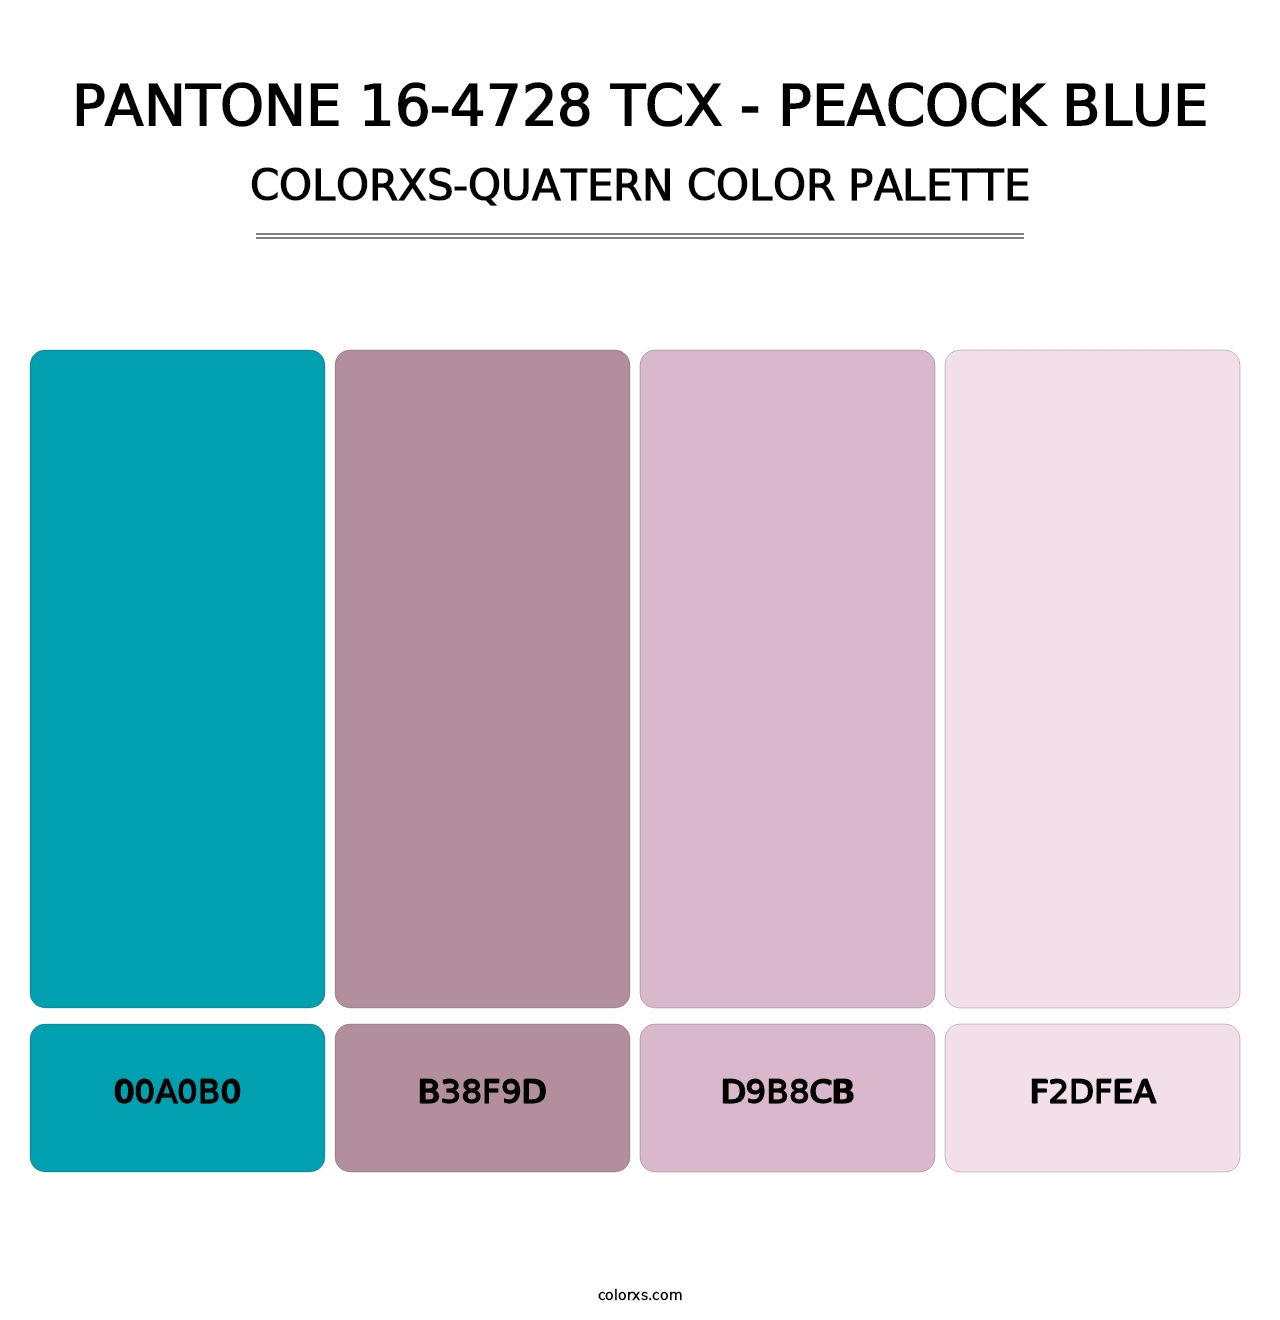 PANTONE 16-4728 TCX - Peacock Blue - Colorxs Quatern Palette